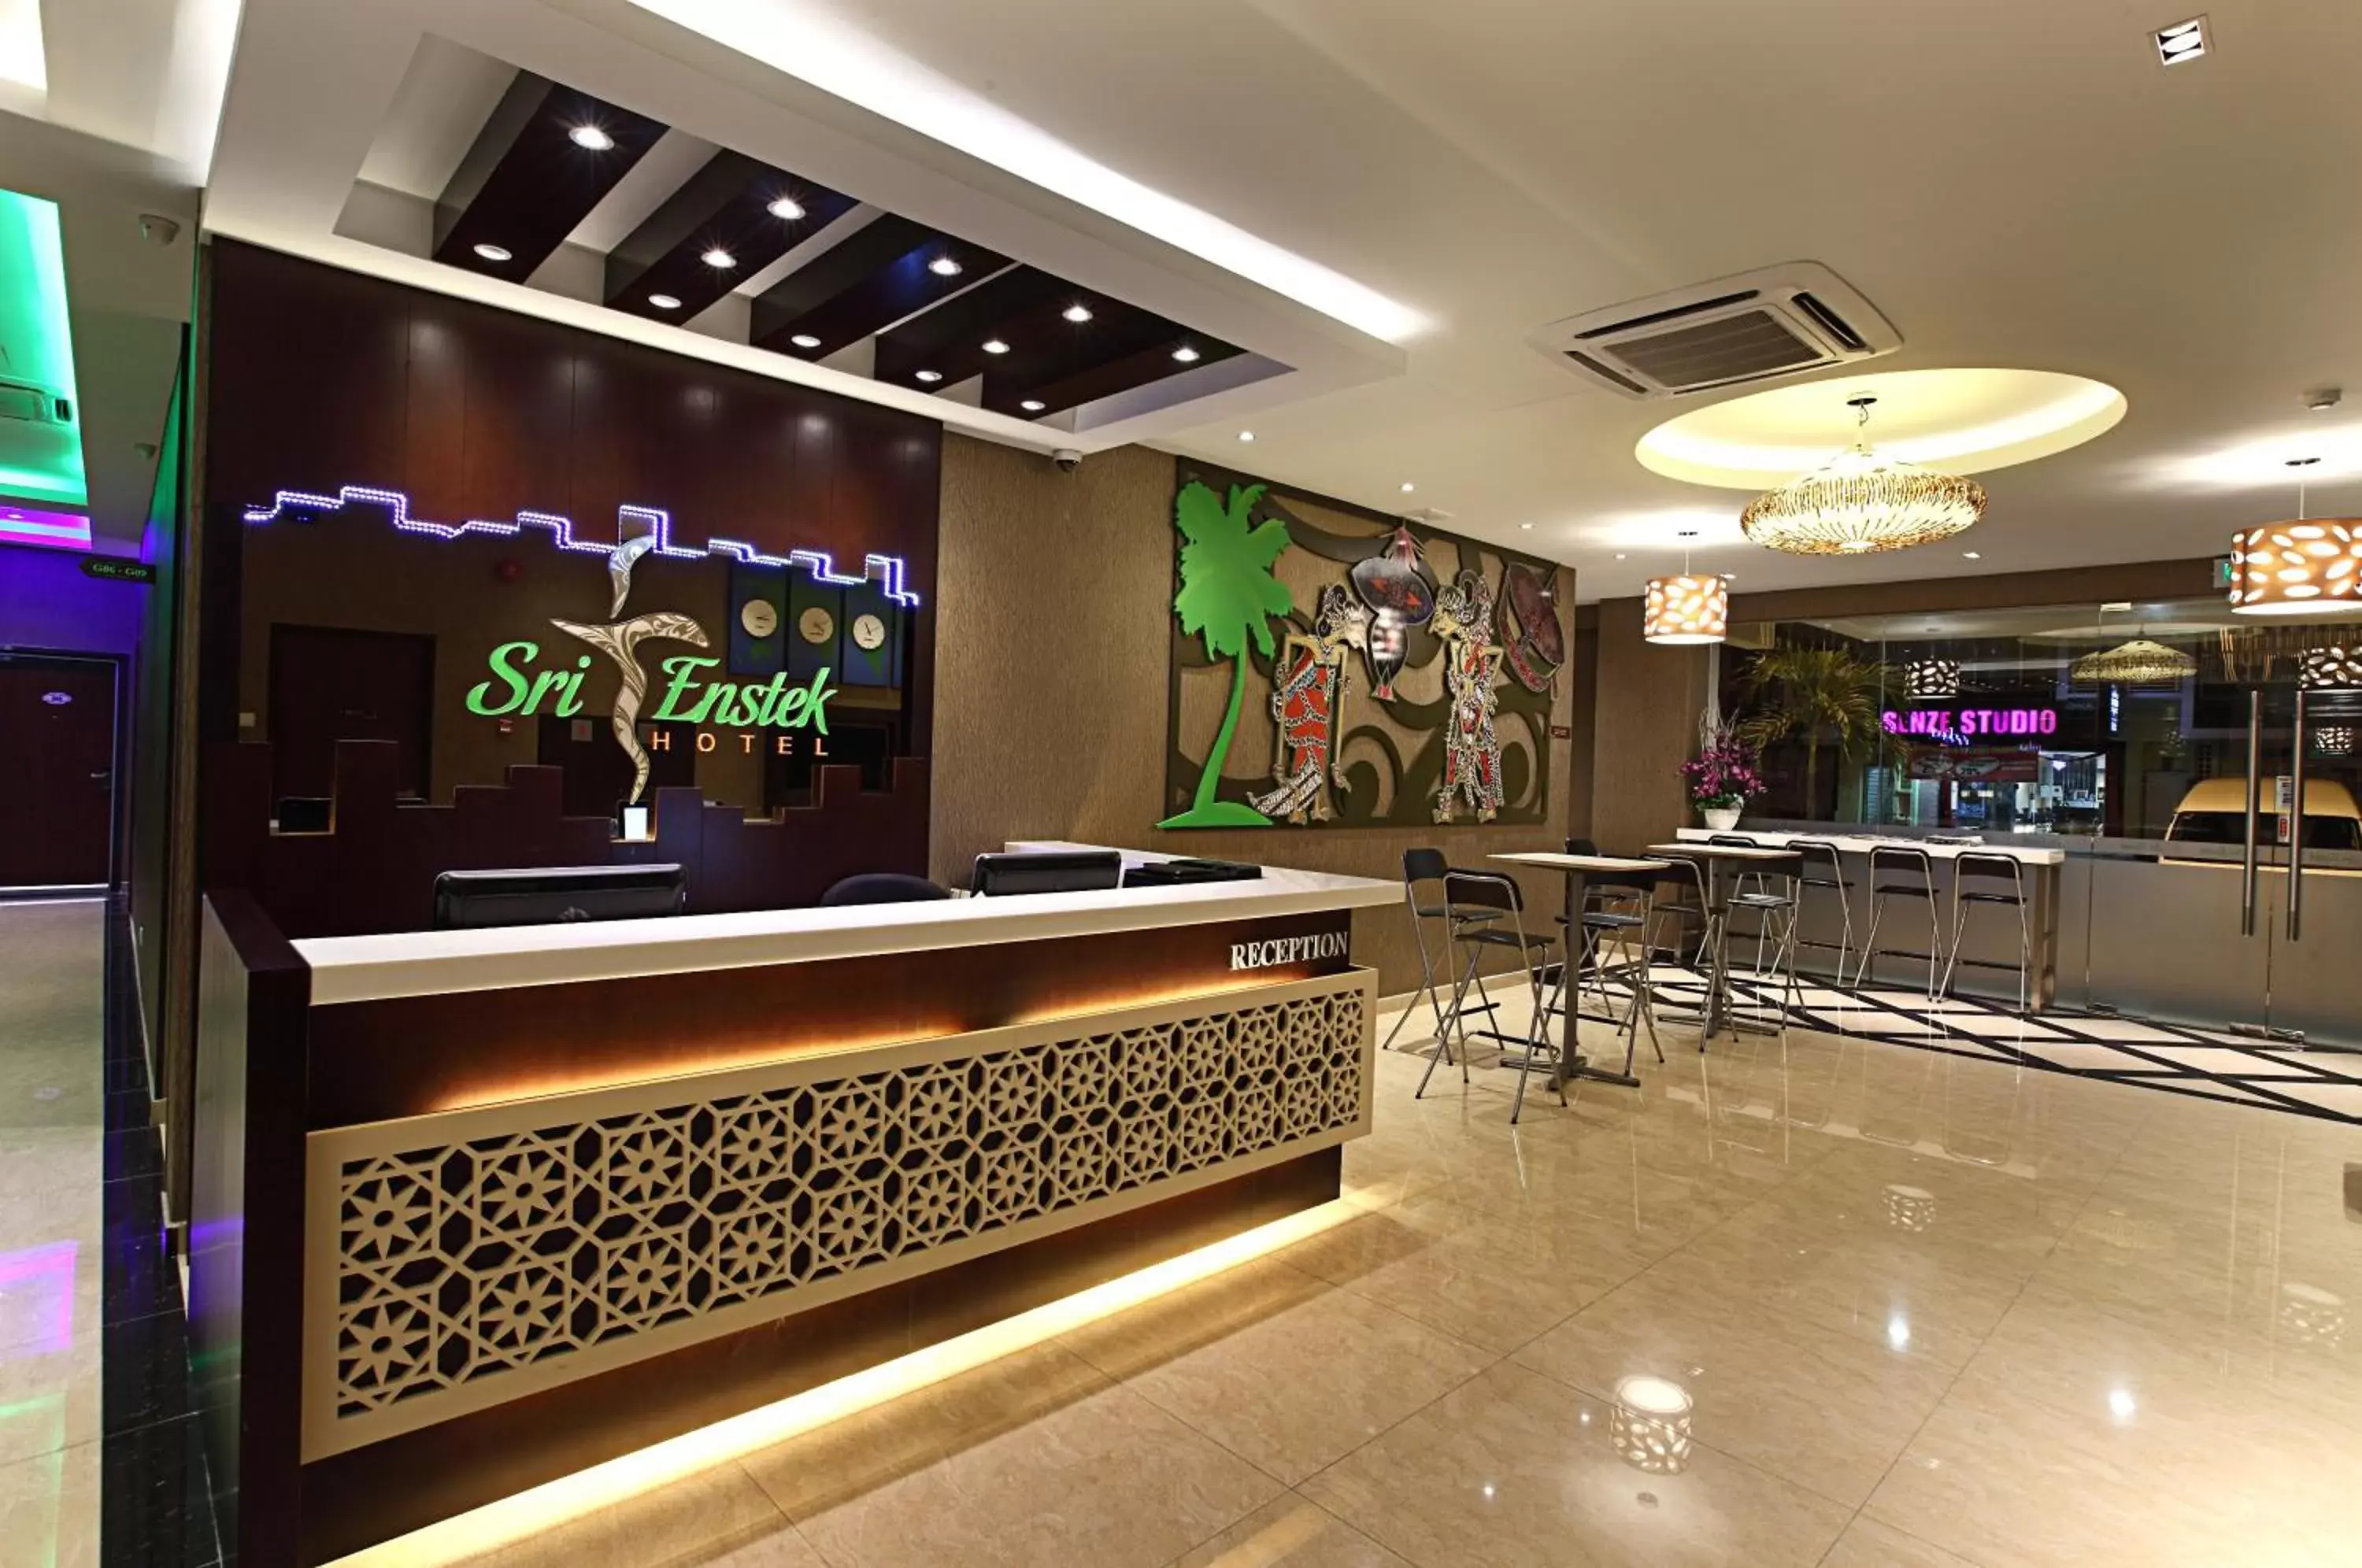 Lobby or reception, Lobby/Reception in Sri Enstek Hotel KLIA, KLIA 2 & F1